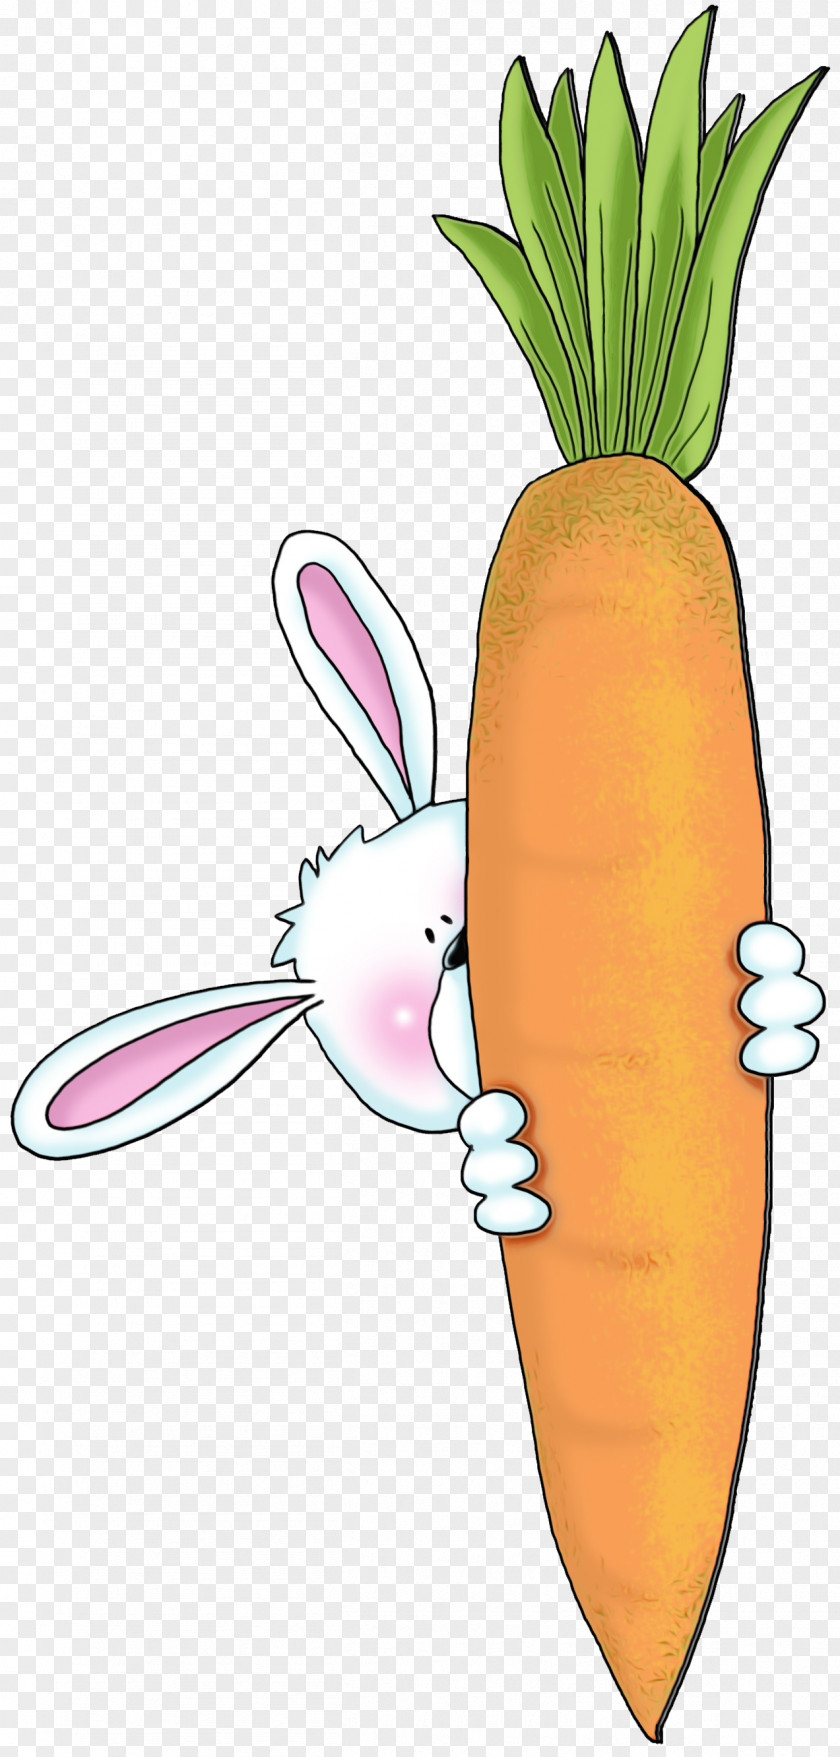 Carrot Radish Root Vegetable Daikon PNG